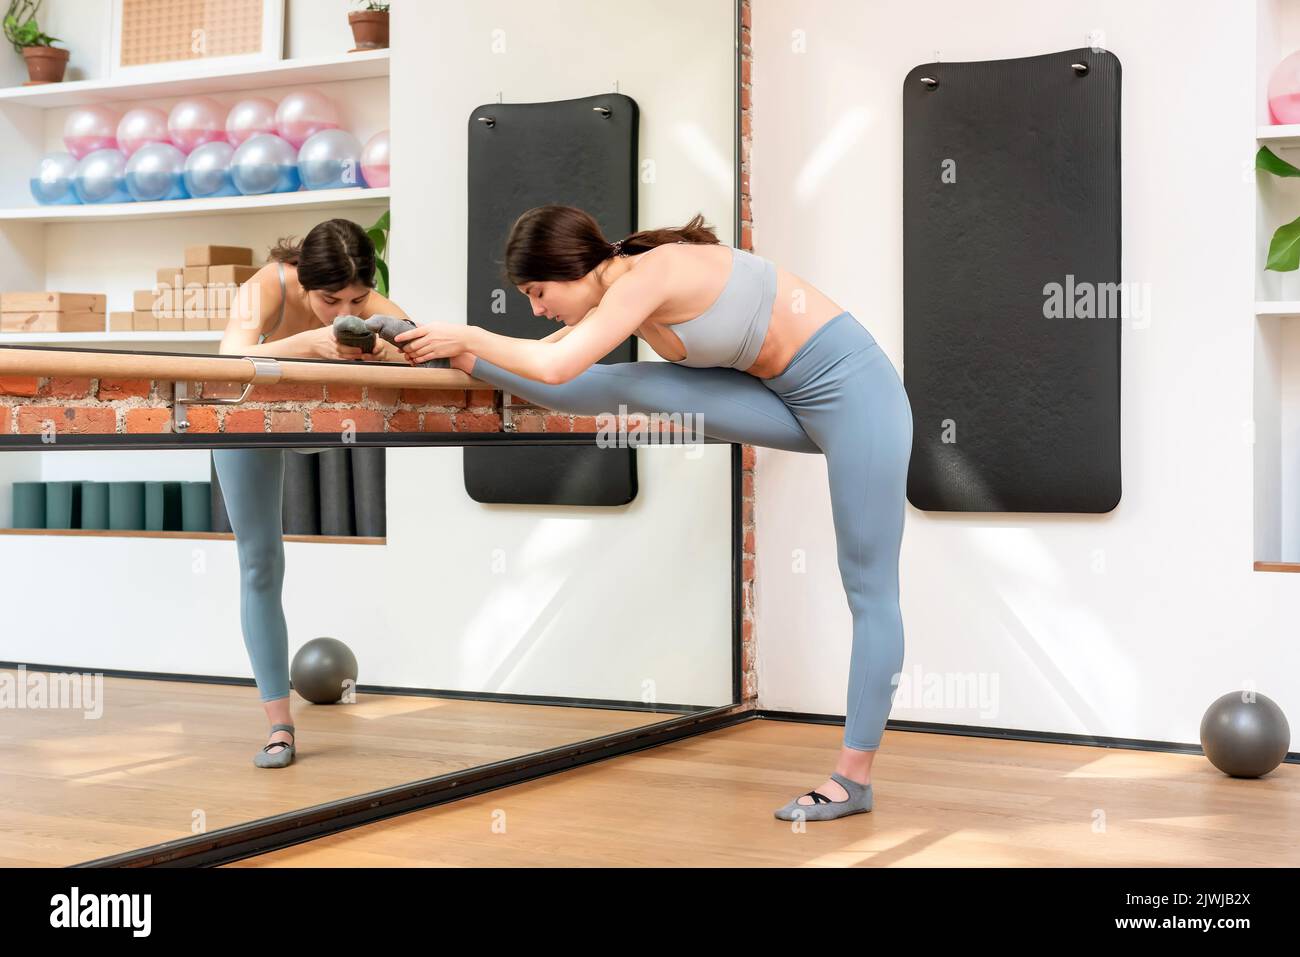 Frau, die in einem Barre in einer Turnhalle Beinstreckübungen in einem Gesundheits- und Fitnesskonzept macht, das sich in einem Wandspiegel widerspiegelt Stockfoto